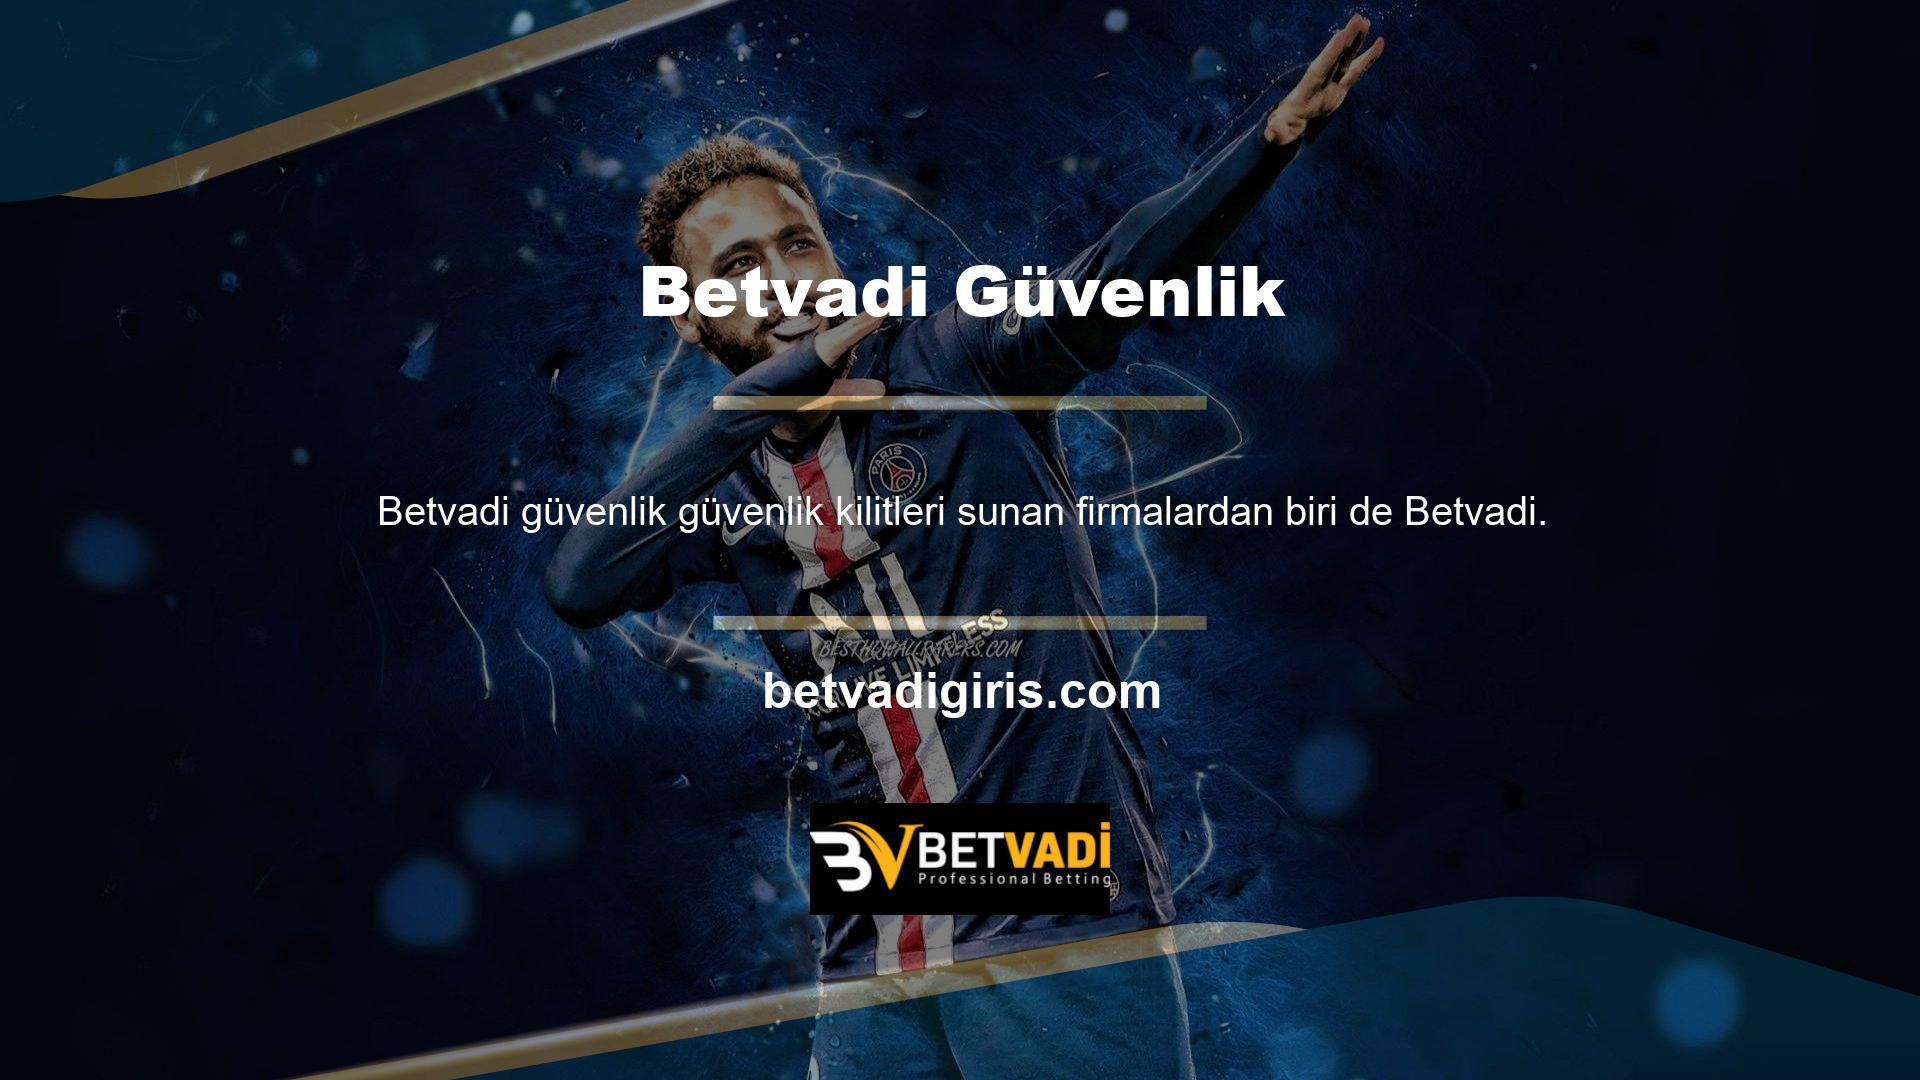 Betvadi, Türkiye'deki tüm casino oyuncuları tarafından oldukça değer verilen ve güvenilir bir bahis sitesidir